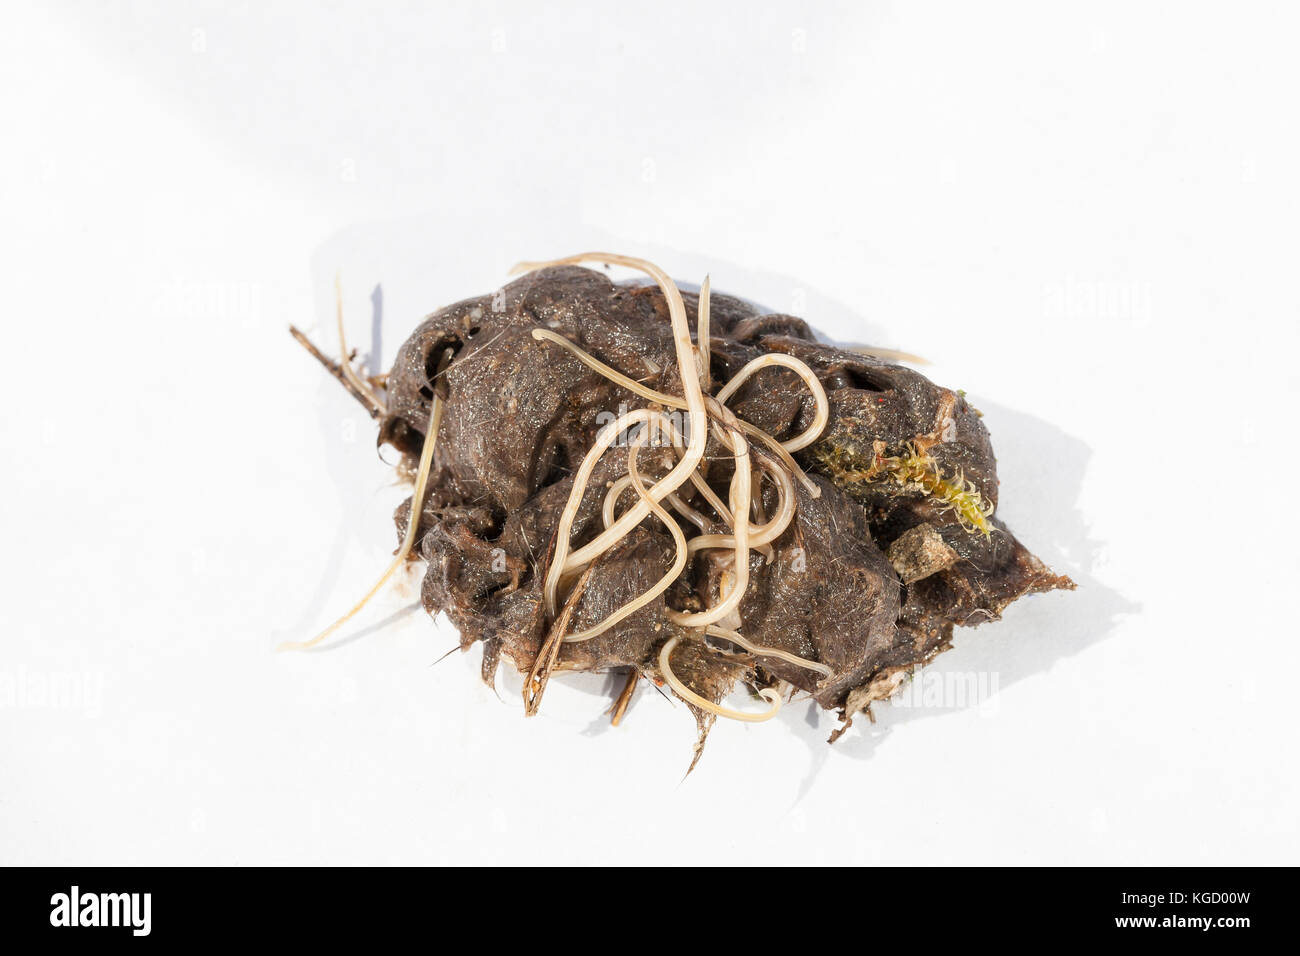 Masse der Ascaris Spulwürmer in einem Haar Kugel von einem 9 Monat wilde Katze mit dem Zentrum weibliche Wurm von rund 30 Zentimeter. Auf strukturiertem Papier. Stockfoto